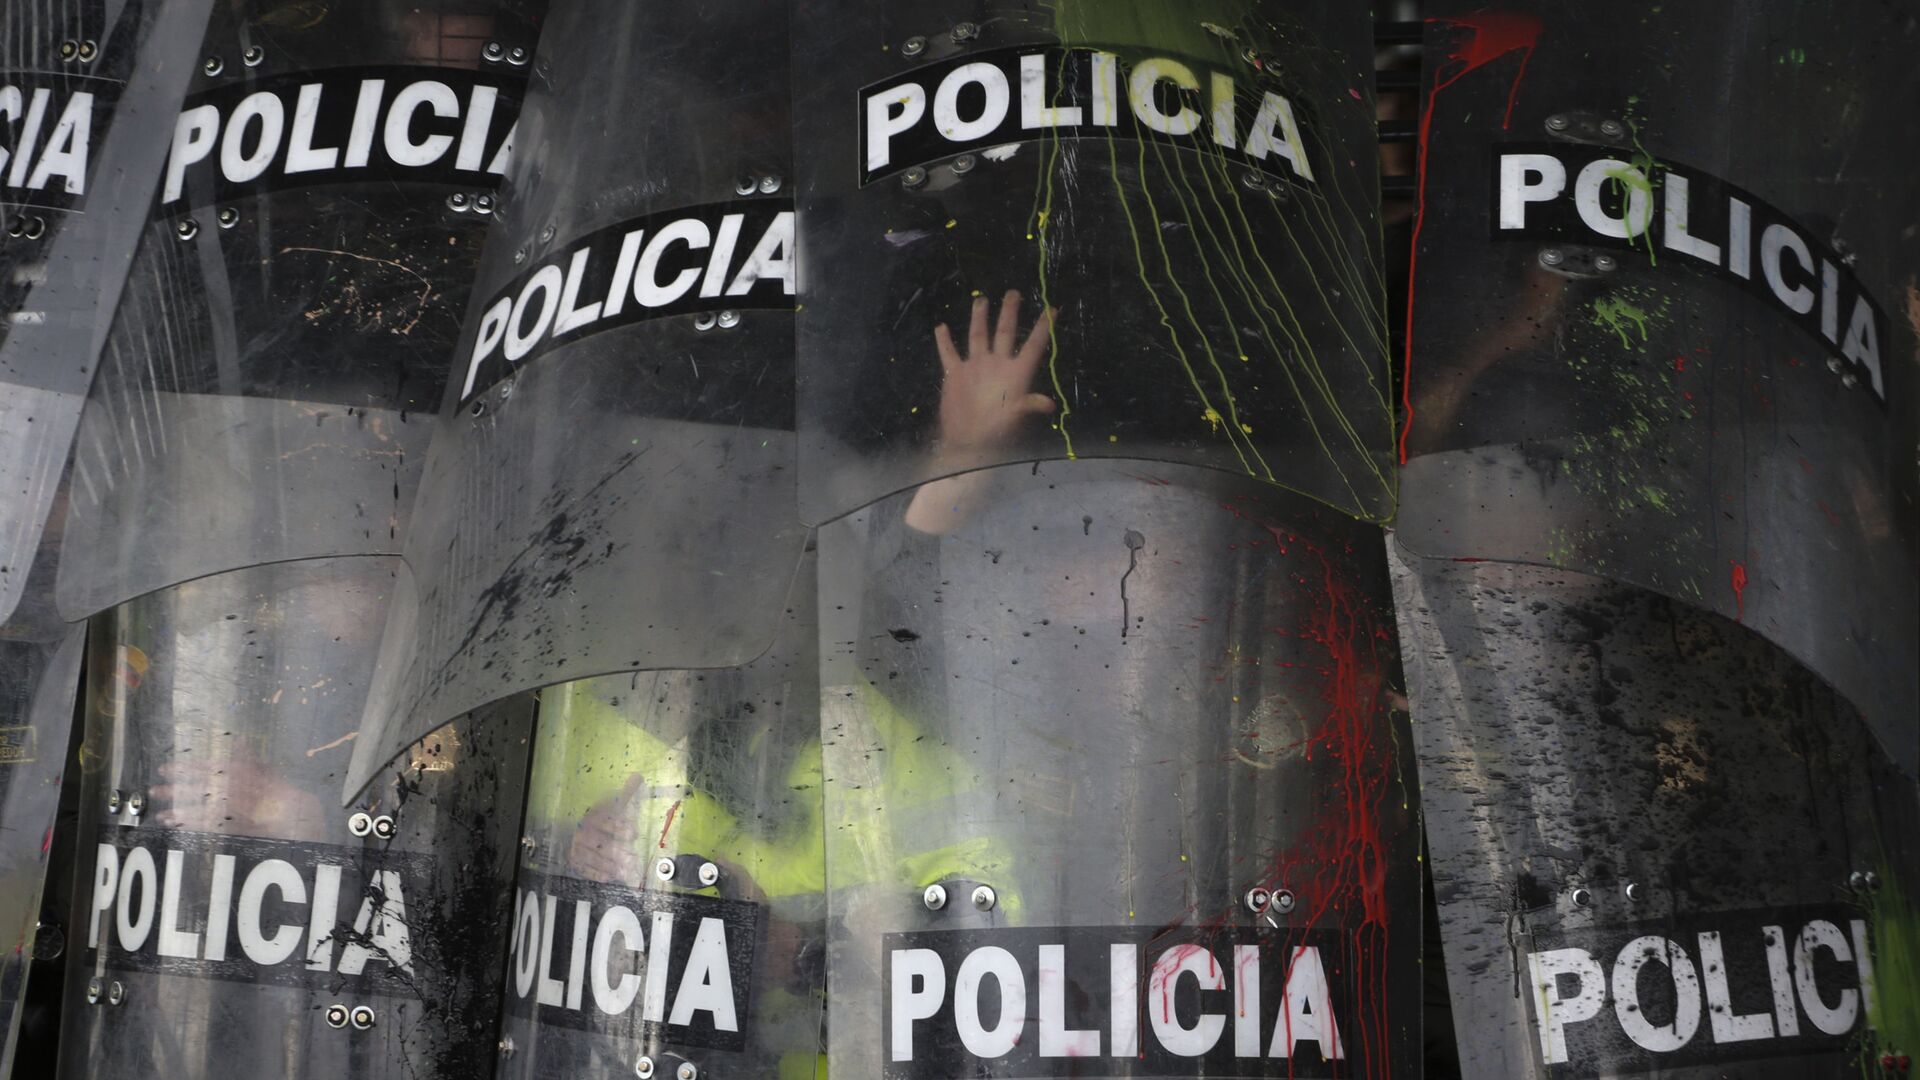 Escudos de la Policía durante una manifestación estudiantil en Bogotá, Colombia, en octubre de 2019 - Sputnik Mundo, 1920, 05.01.2022